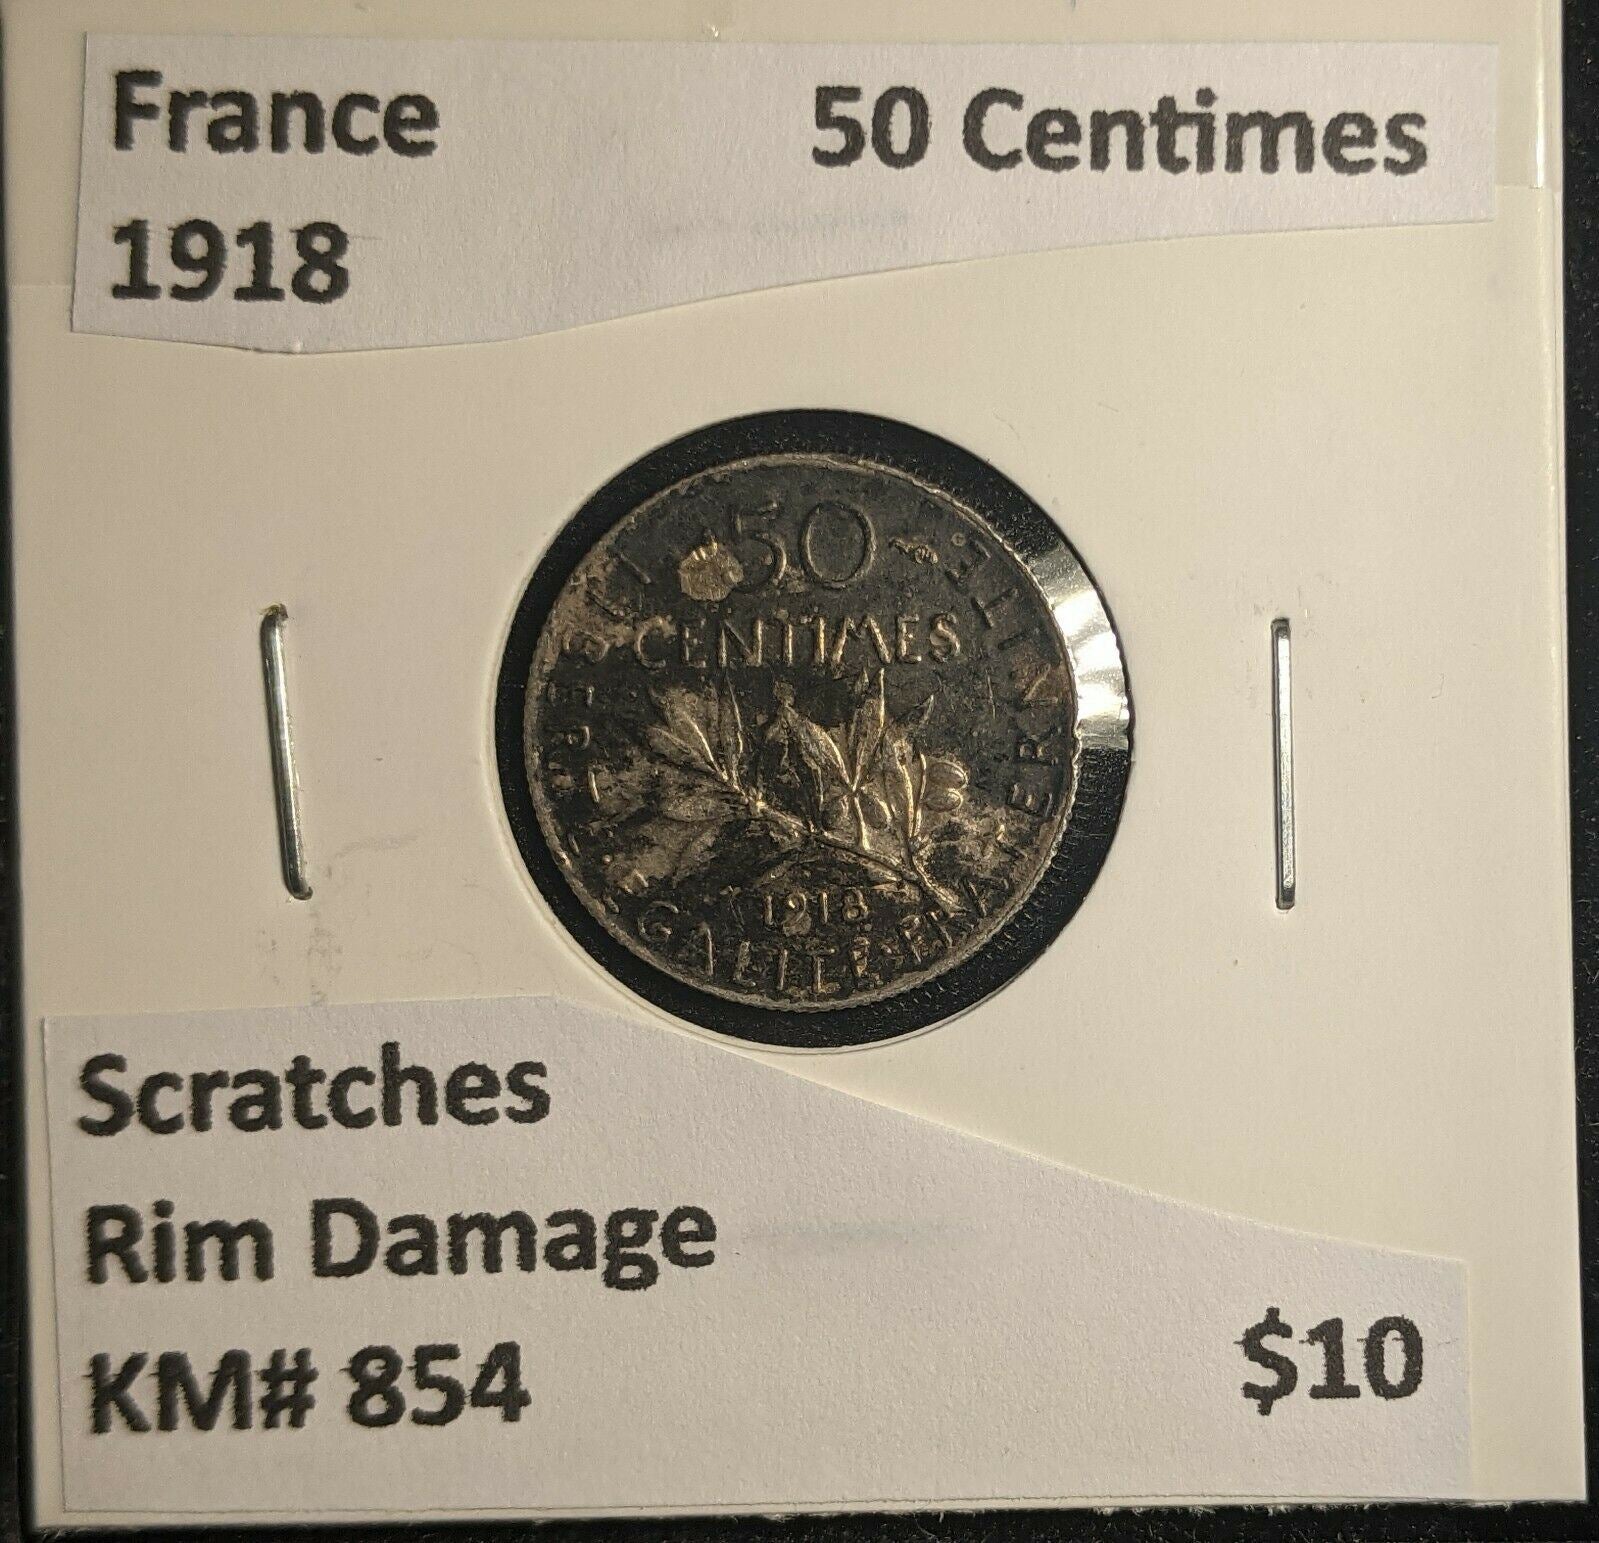 France 1918 50 Centimes KM# 854 Scratches Rim Damage #603 6A